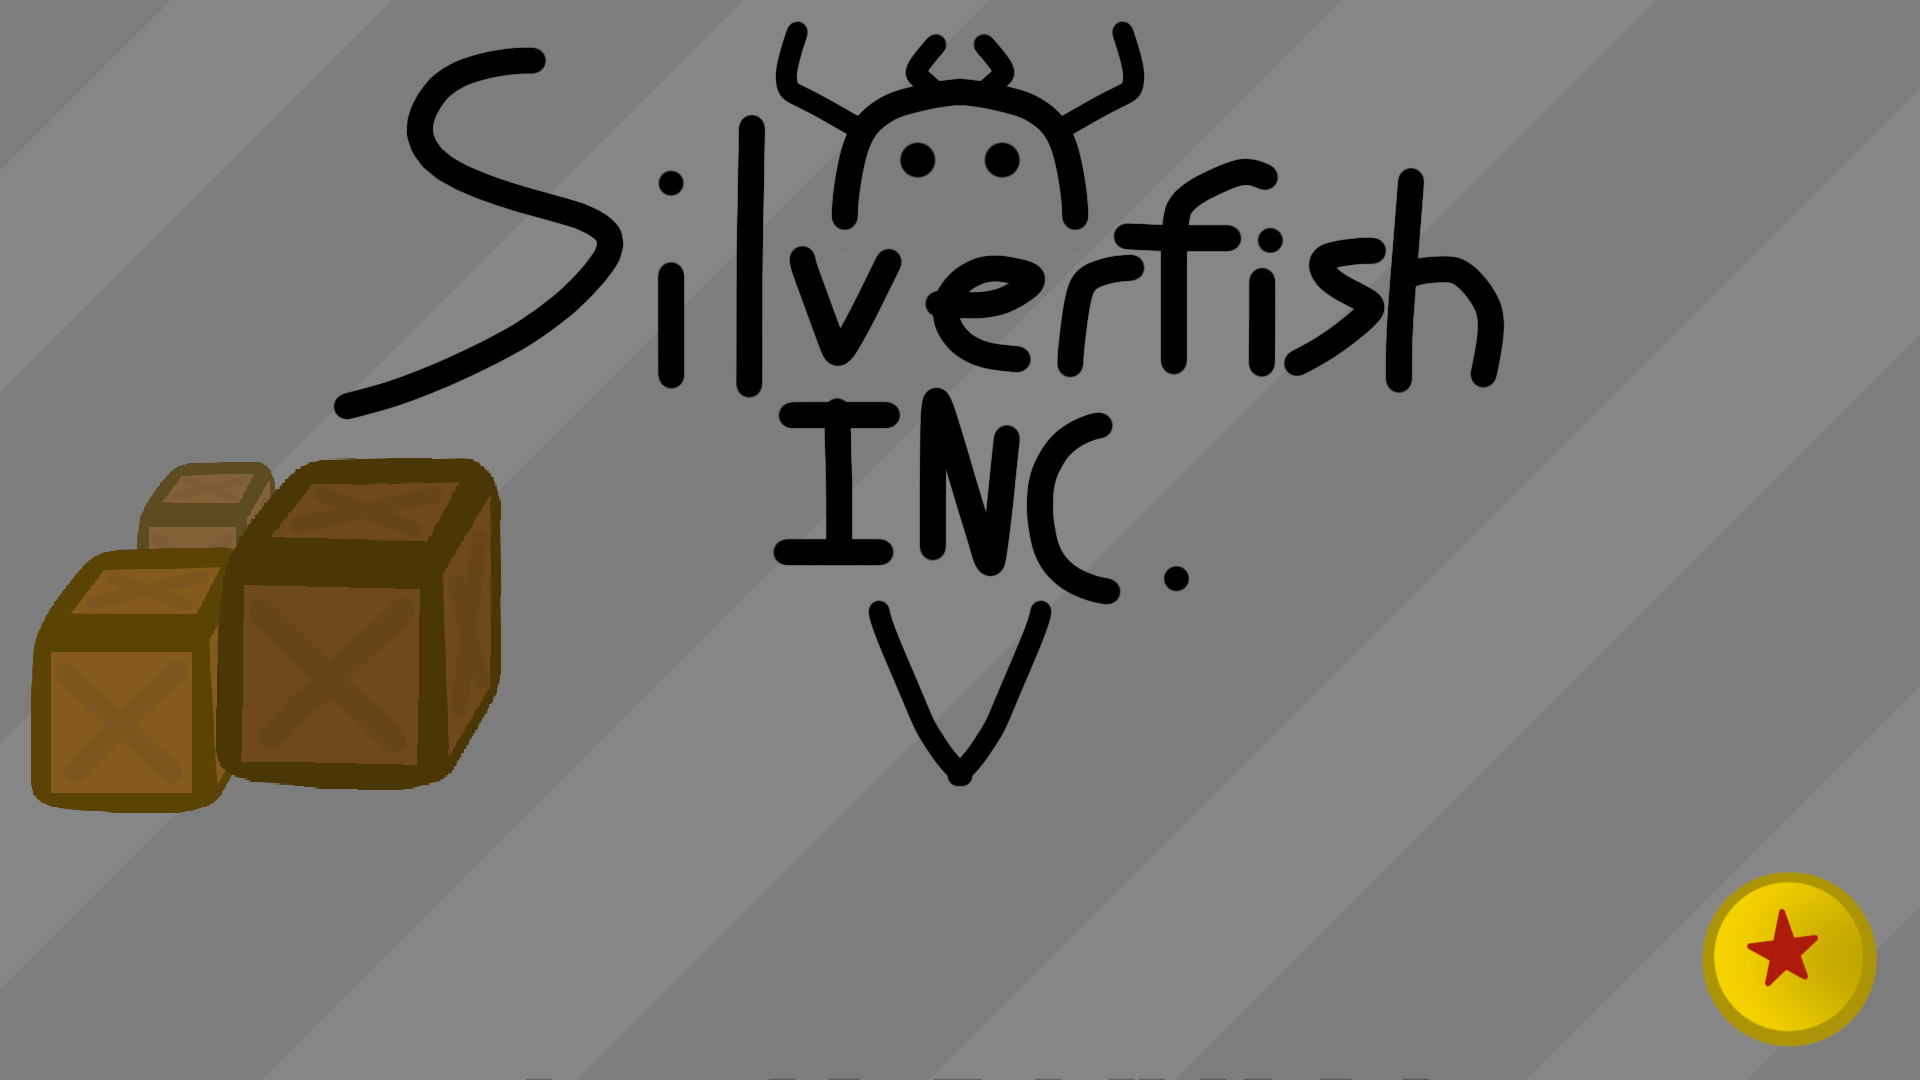 Silverfish INC